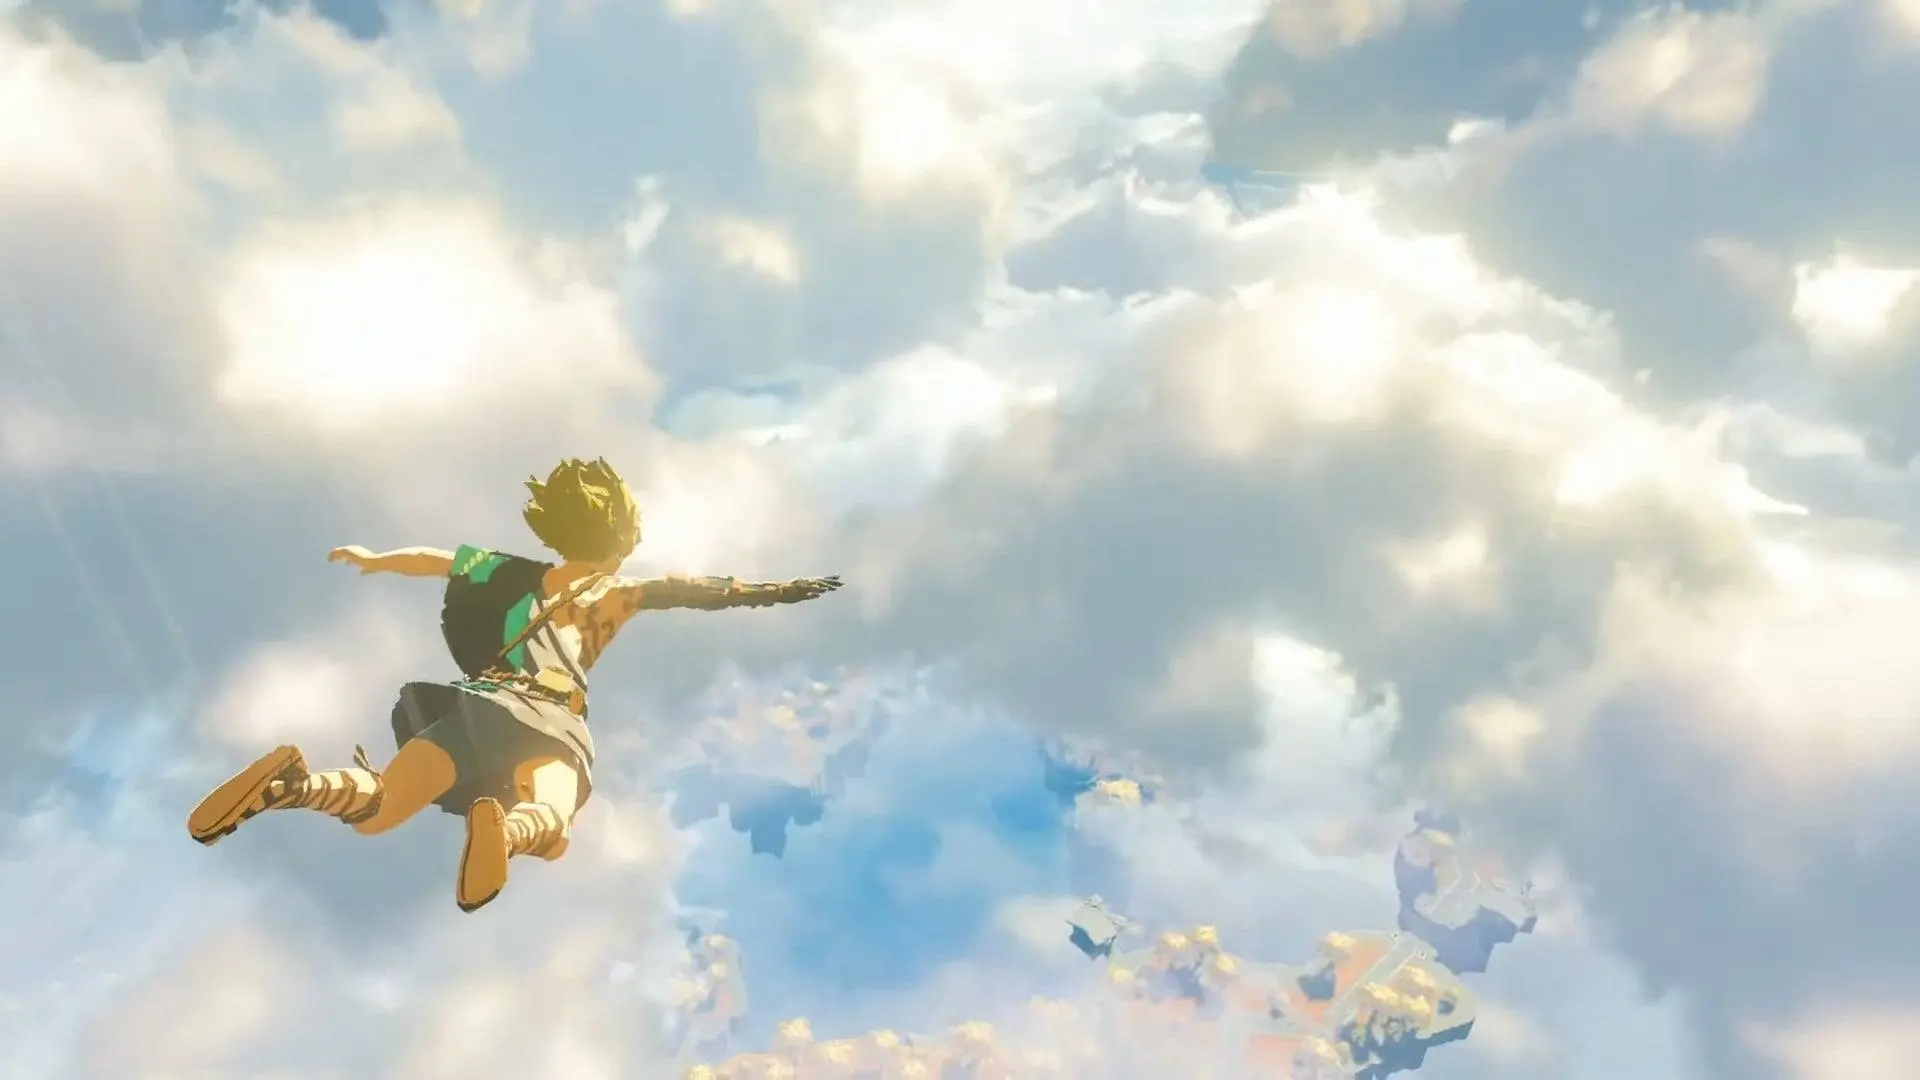 Zelda: Breath of the Wild vervolg uitgesteld tot 2023